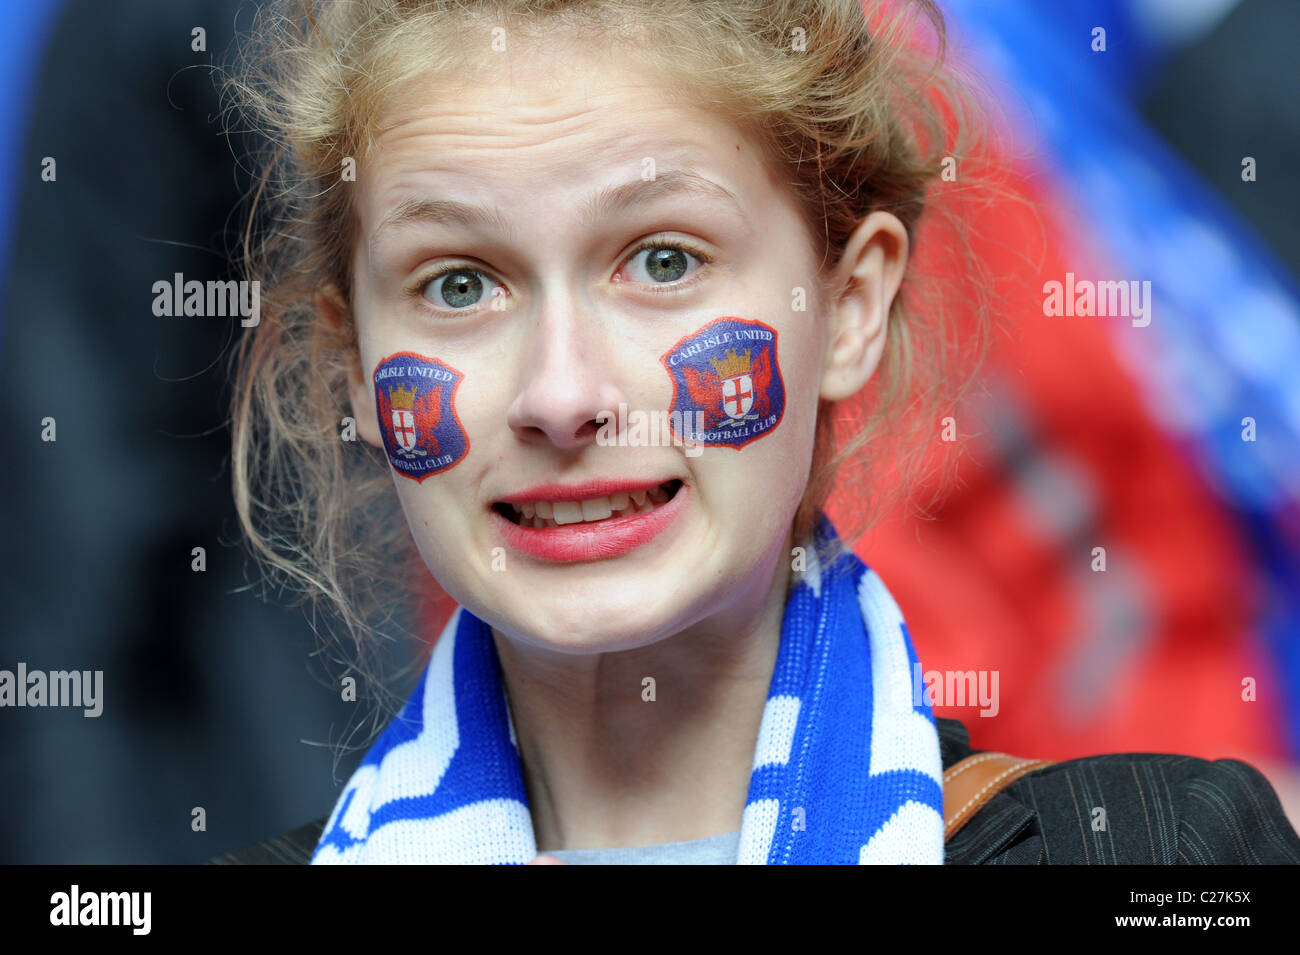 Fútbol Femenino atractivo partidario vistiendo Carlisle United Club transferencias insignia en su cara Foto de stock